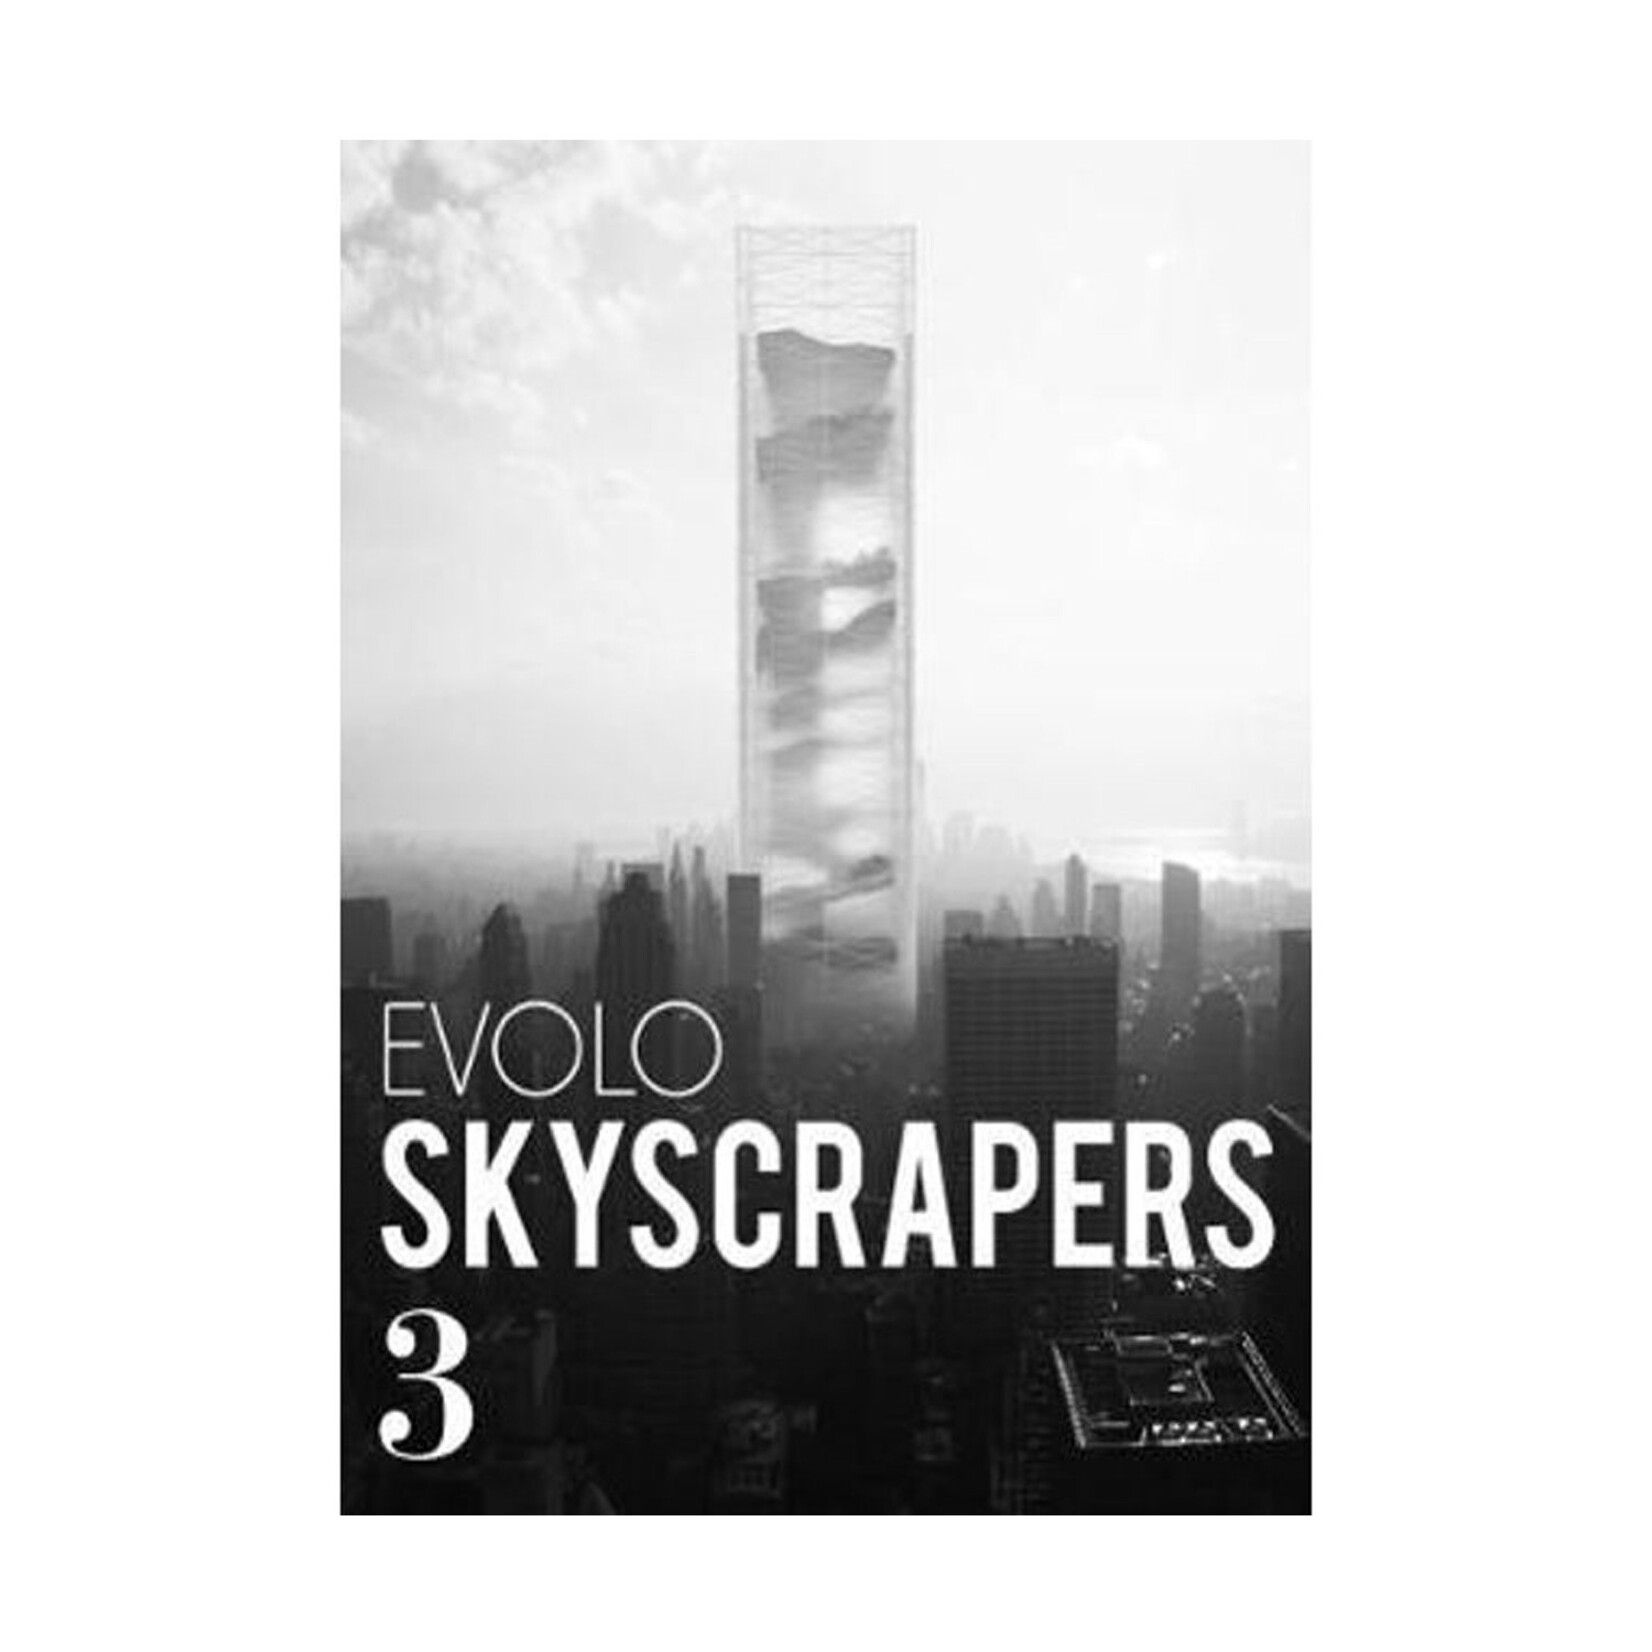 Evolo Skyscrapers 3